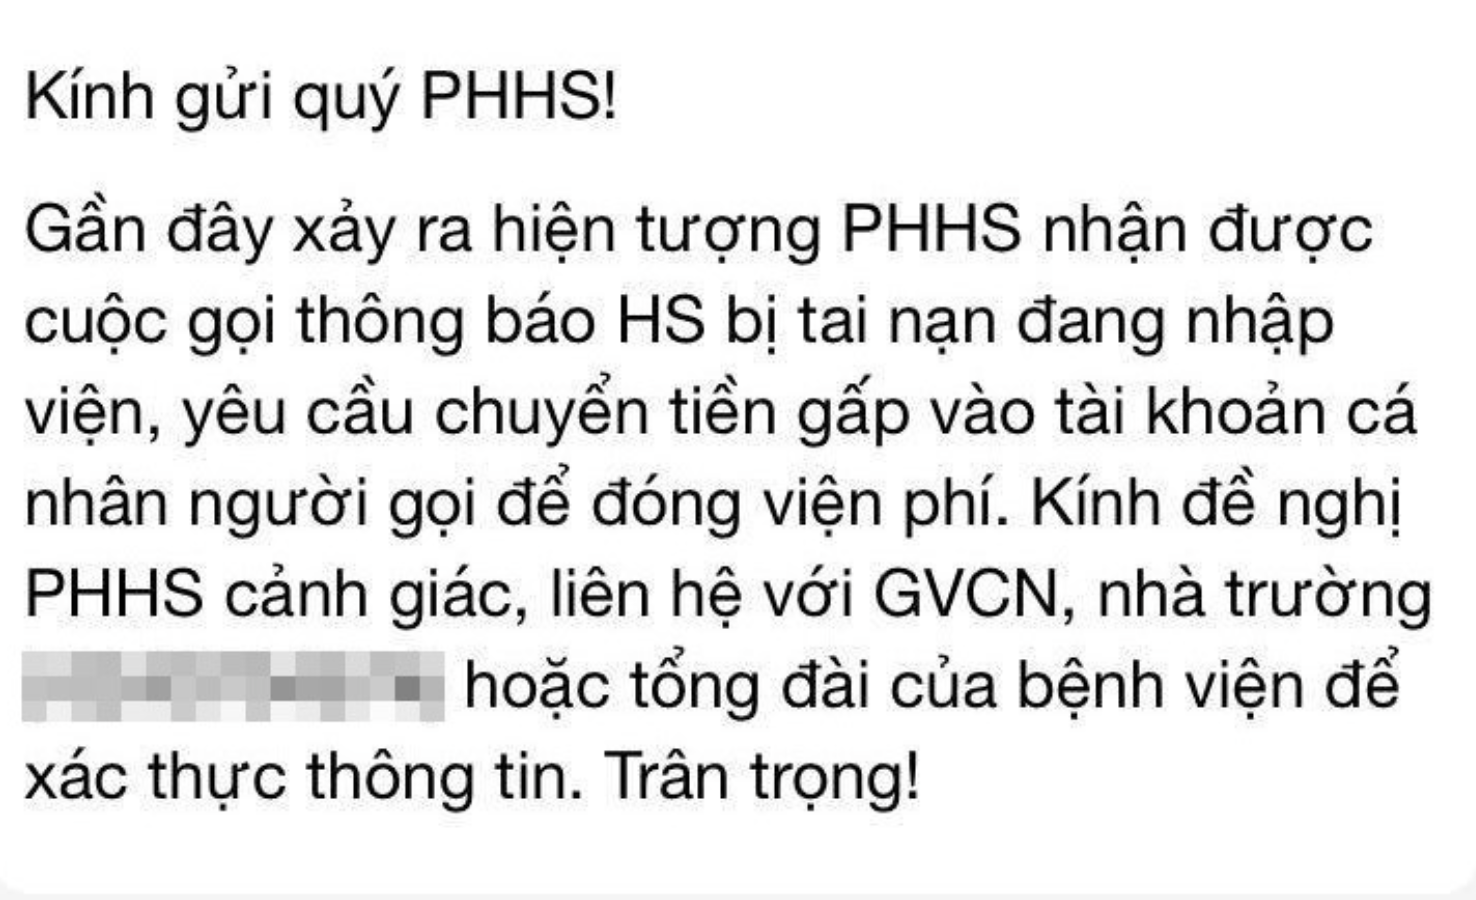 Nhiều trường học ở Hà Nội cảnh báo chiêu trò lừa đảo ‘con đang cấp cứu, yêu cầu chuyển tiền gấp’ - Ảnh 2.